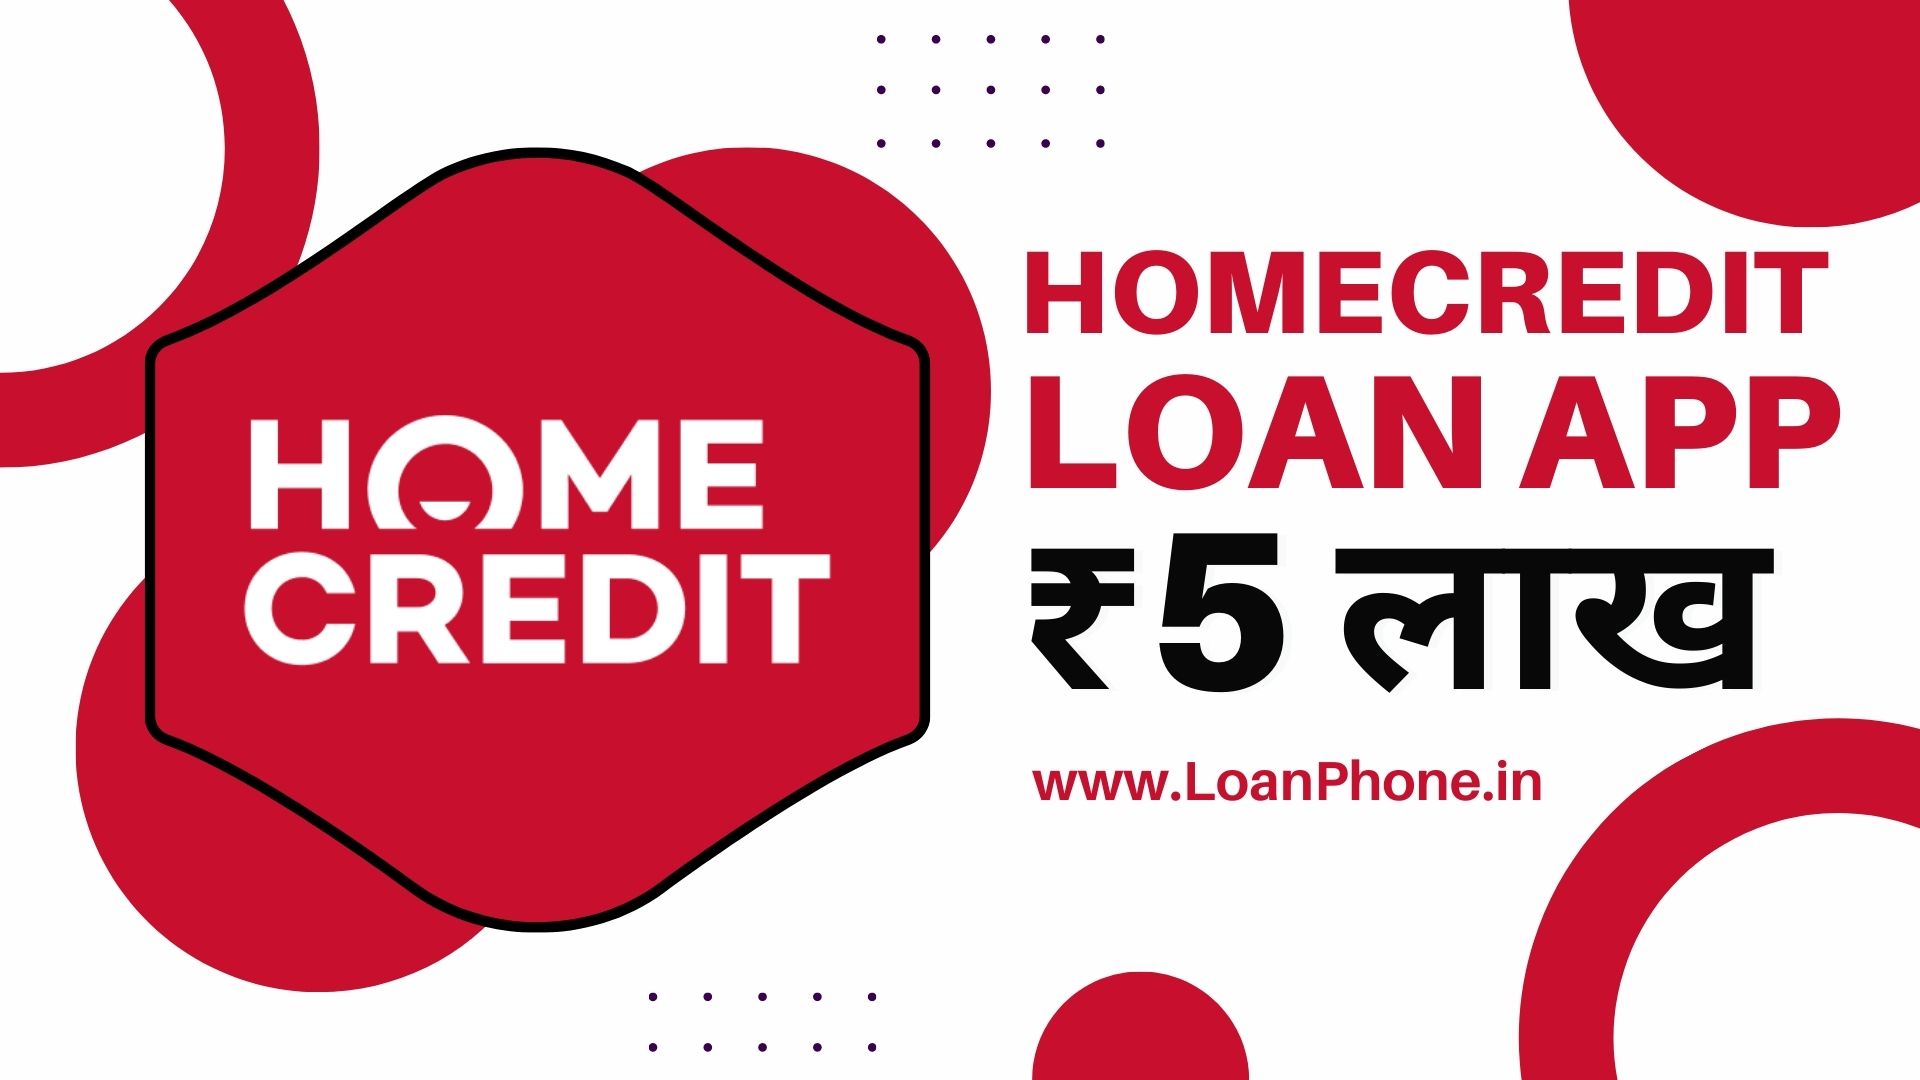 Home Credit Loan App से कितने तक का लोन मिल सकता है?